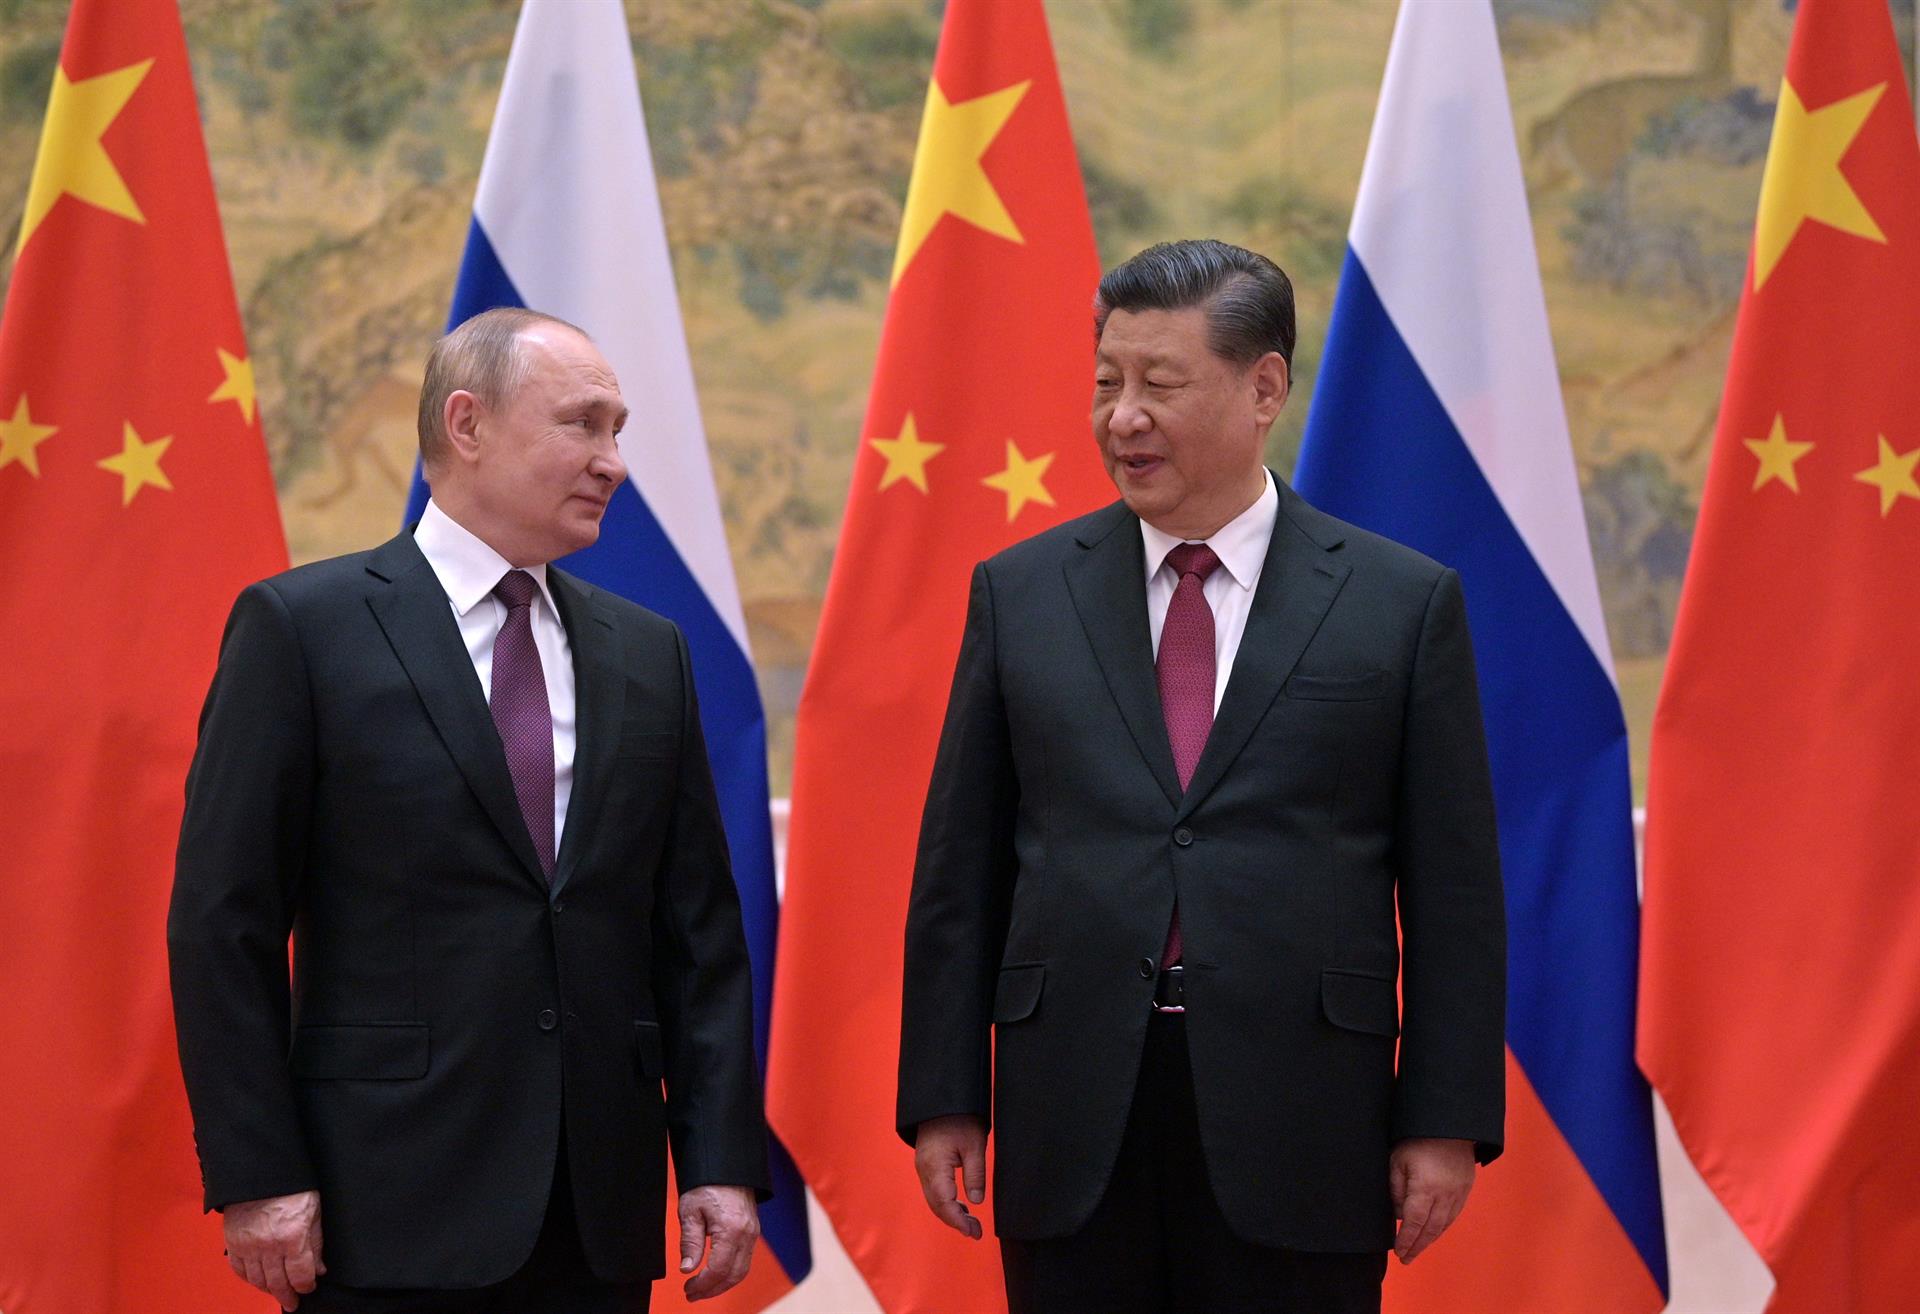 Putin le asegura a Xi Jinping que “está dispuesto” a negociar con Ucrania